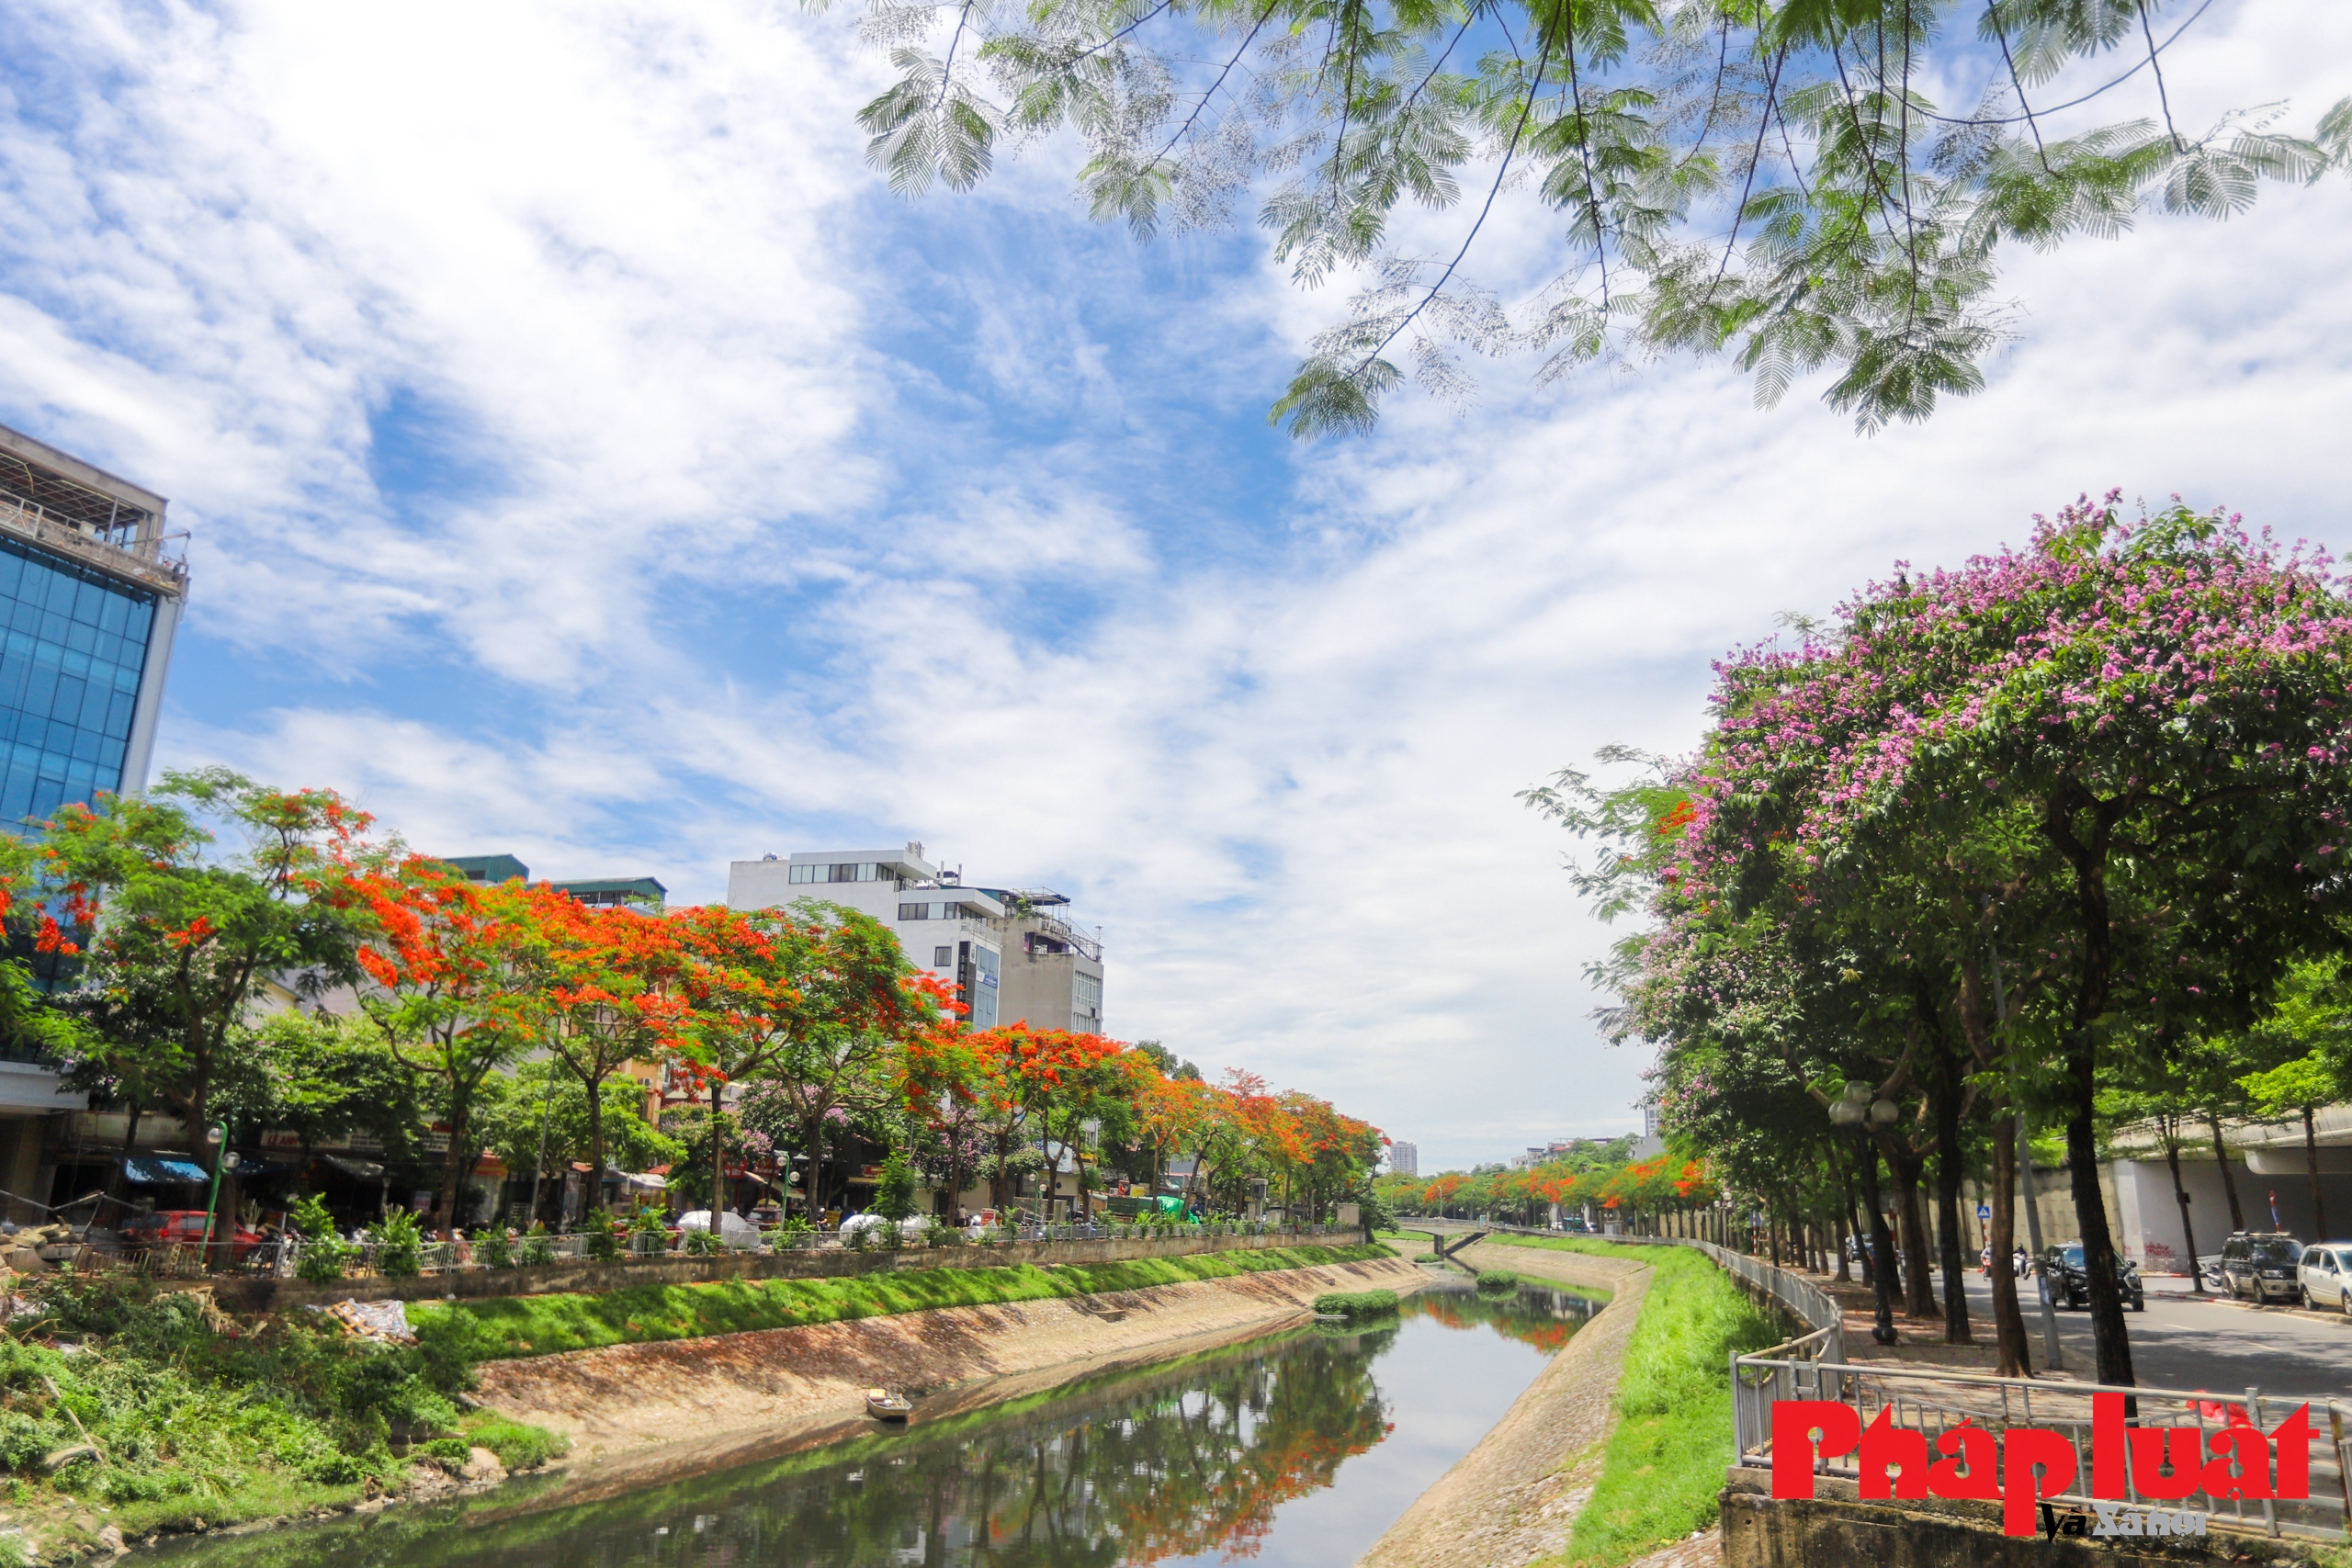 Mùa hoa phượng thơ mộng nở rộ bên bờ sông Tô Lịch